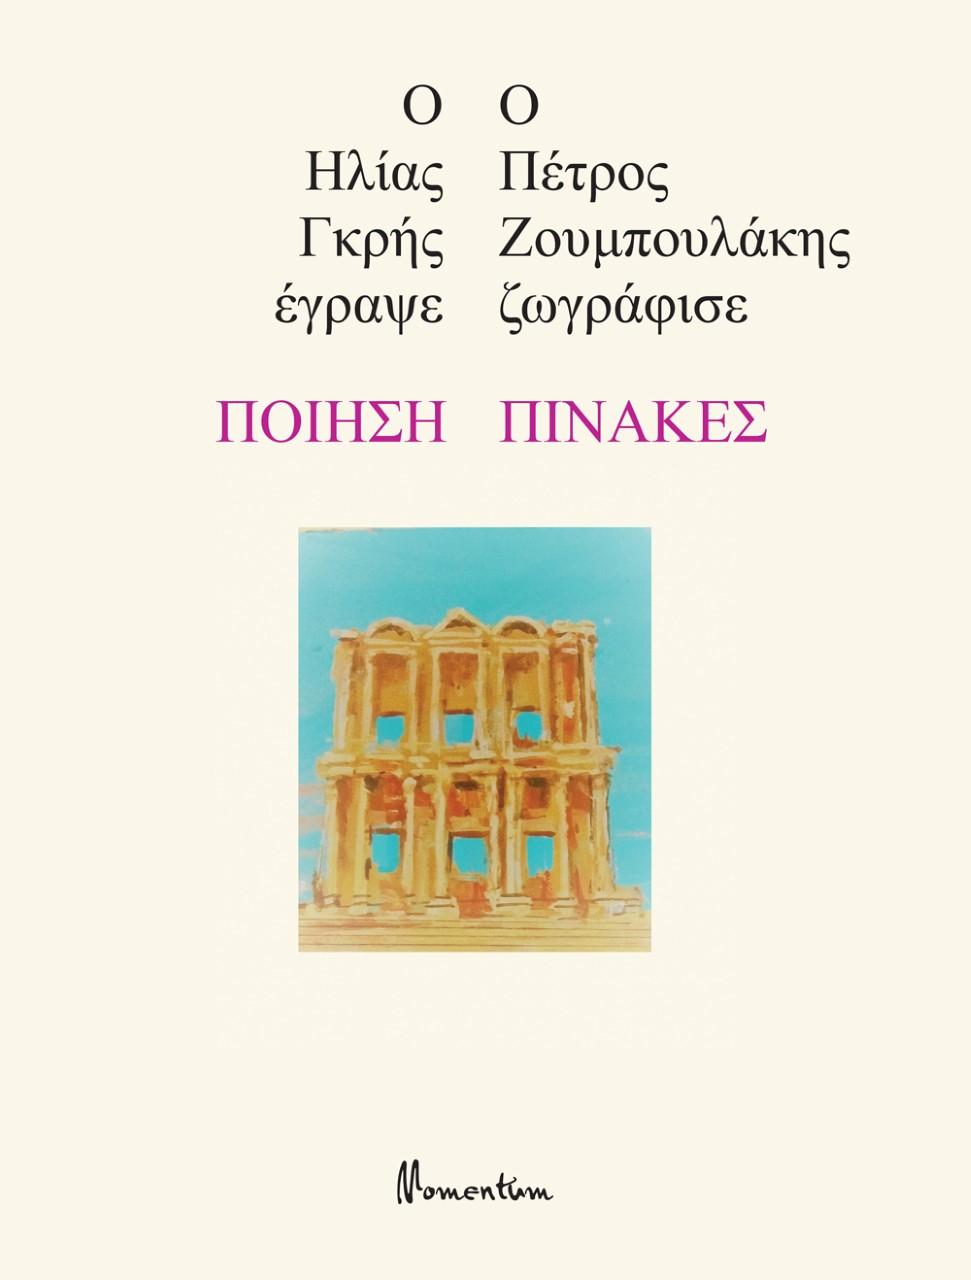 2022, Ζουμπουλάκης, Πέτρος (Zoumpoulakis, Petros), Ποίηση - Πίνακες, , Γκρης, Ηλίας, Momentum